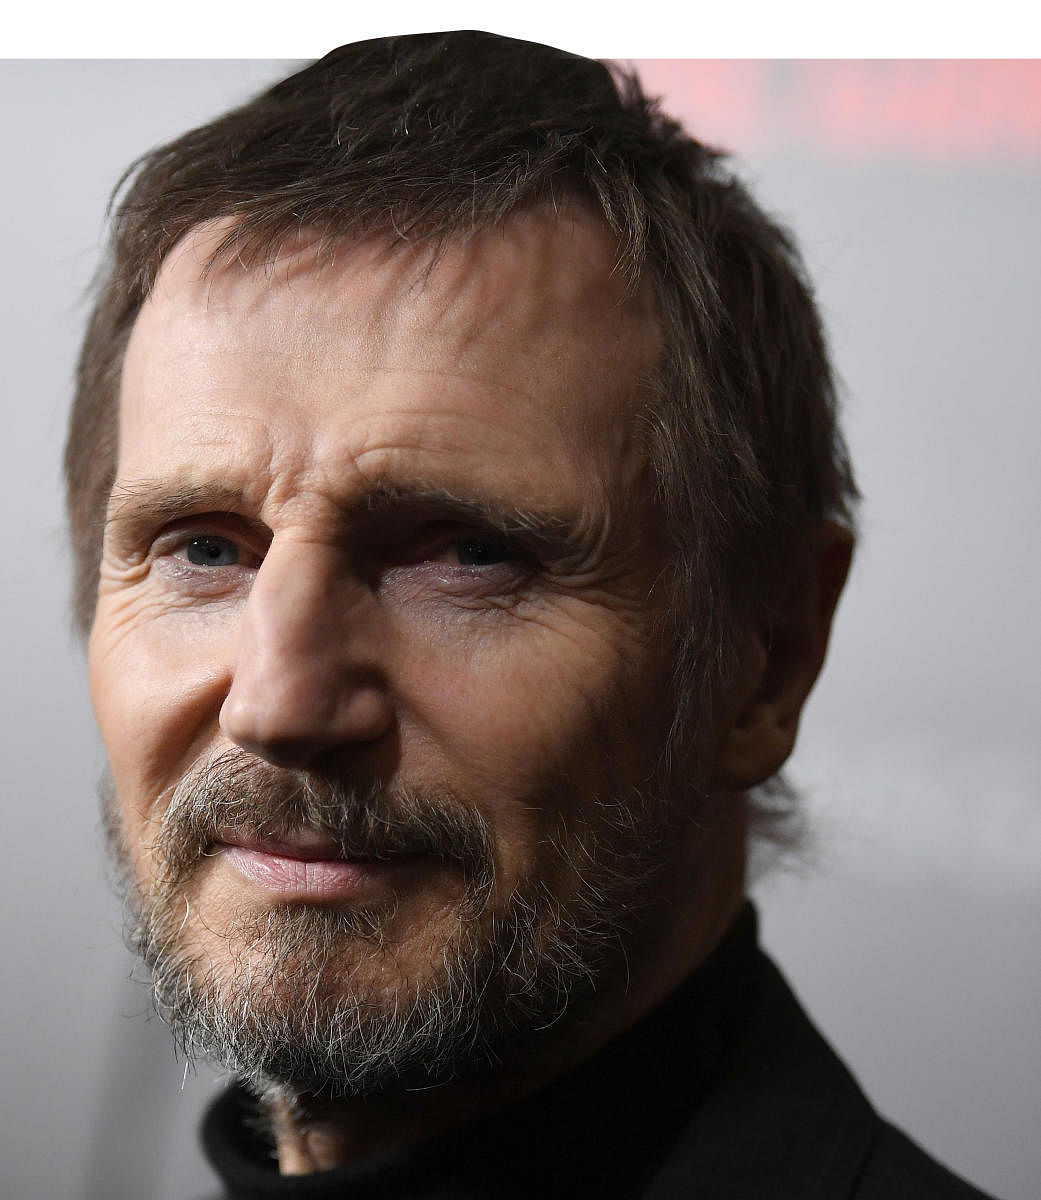 Not a huge fan of superhero genre, says Liam Neeson